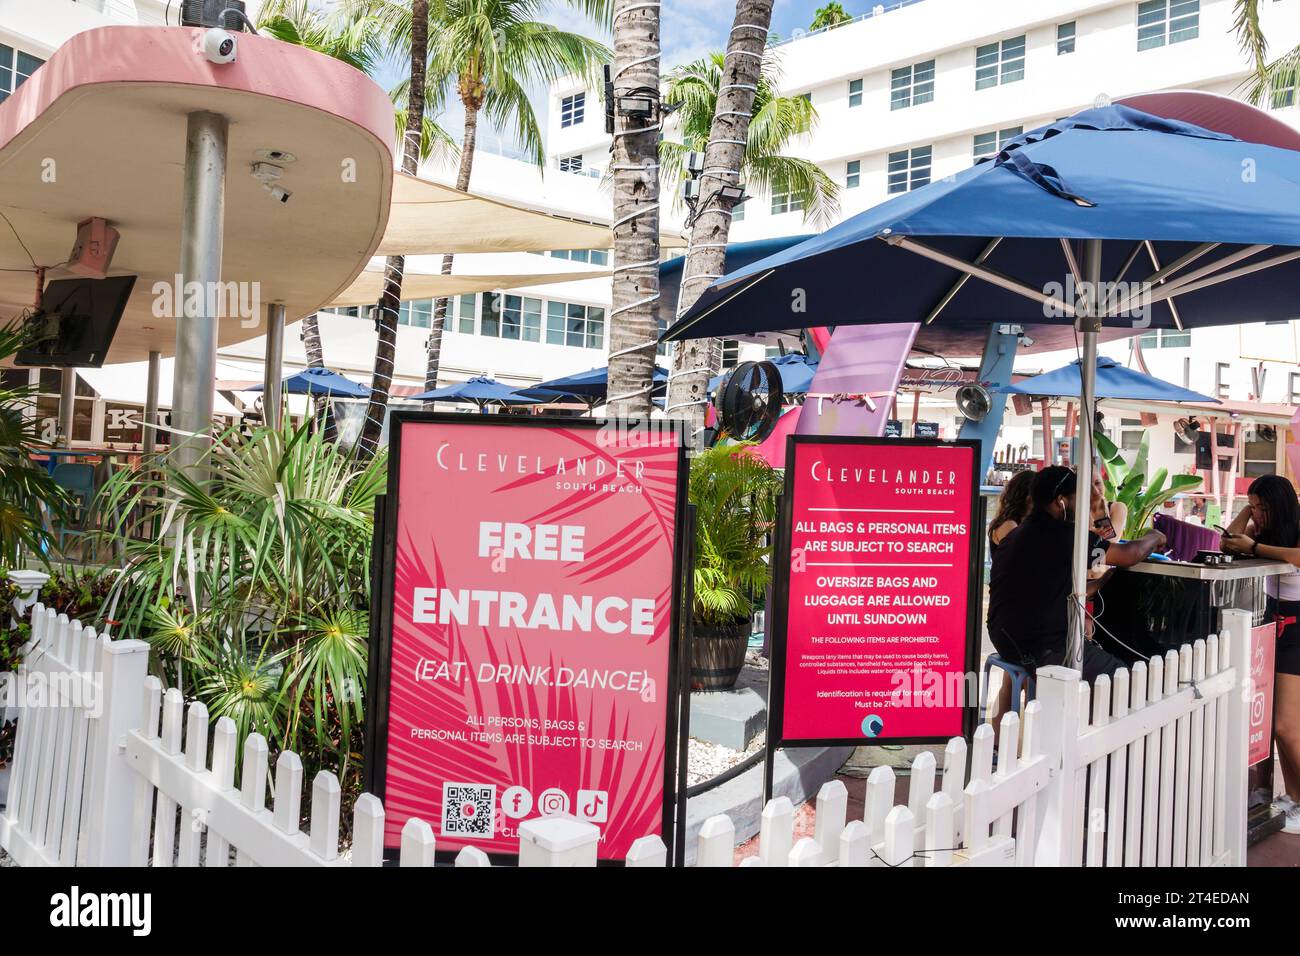 Miami Beach Floride, extérieur, entrée principale de l'hôtel, Ocean Drive, panneau de l'hôtel Clevelander South Beach, panneau d'entrée libre, sujet à la recherche Banque D'Images